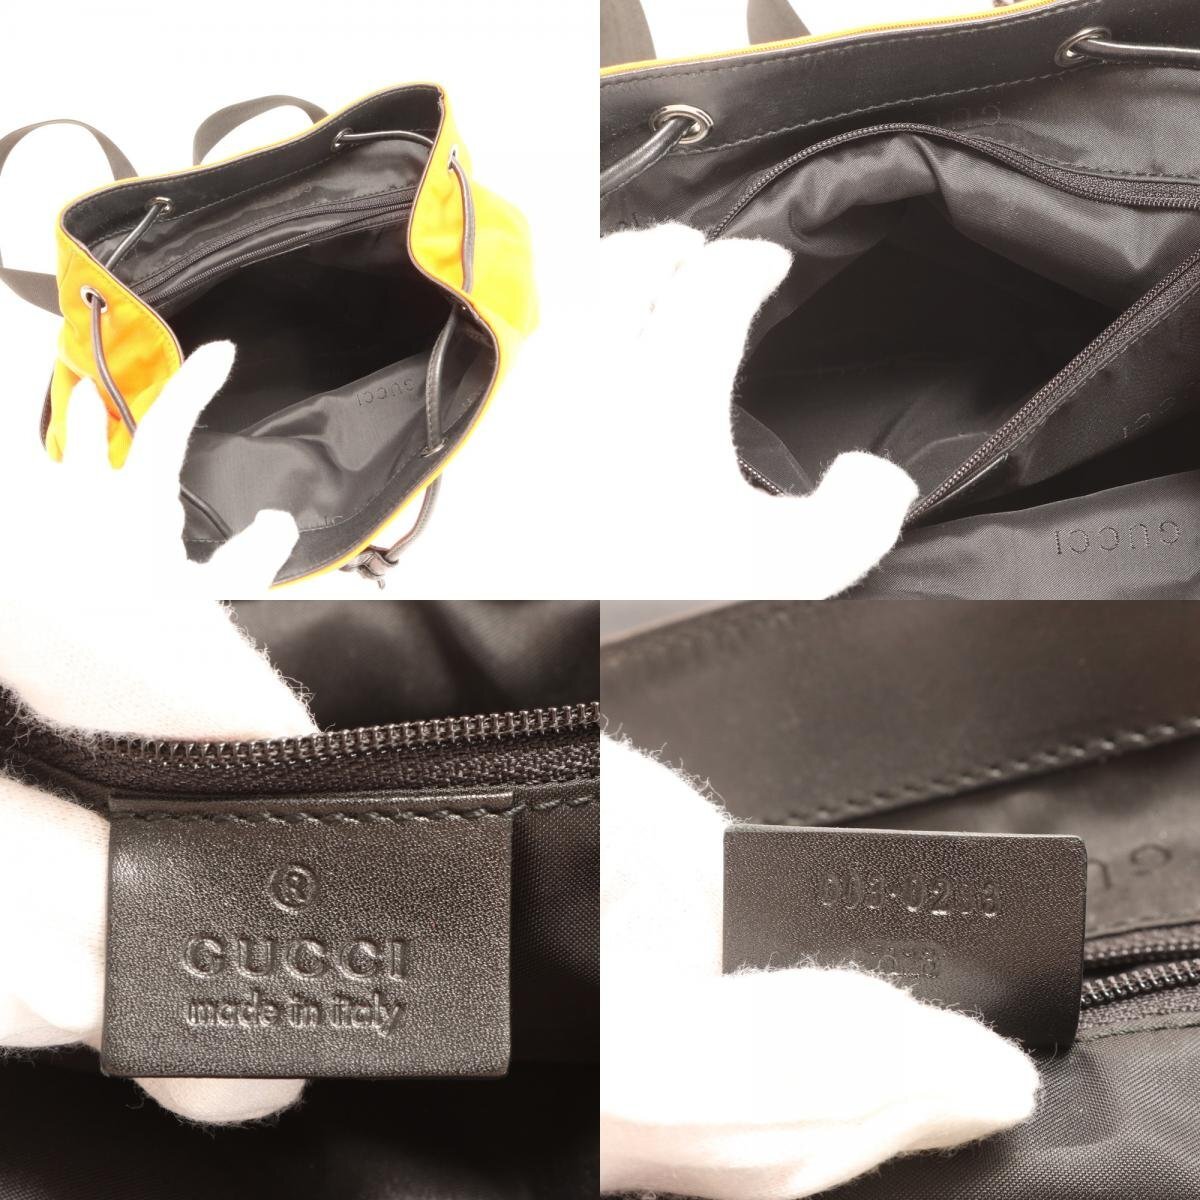 1 иен # прекрасный товар # Gucci кожа рюкзак рюкзак рюкзак сумка на плечо торговая книга вид сумка orange черный мужской EHE AA5-4